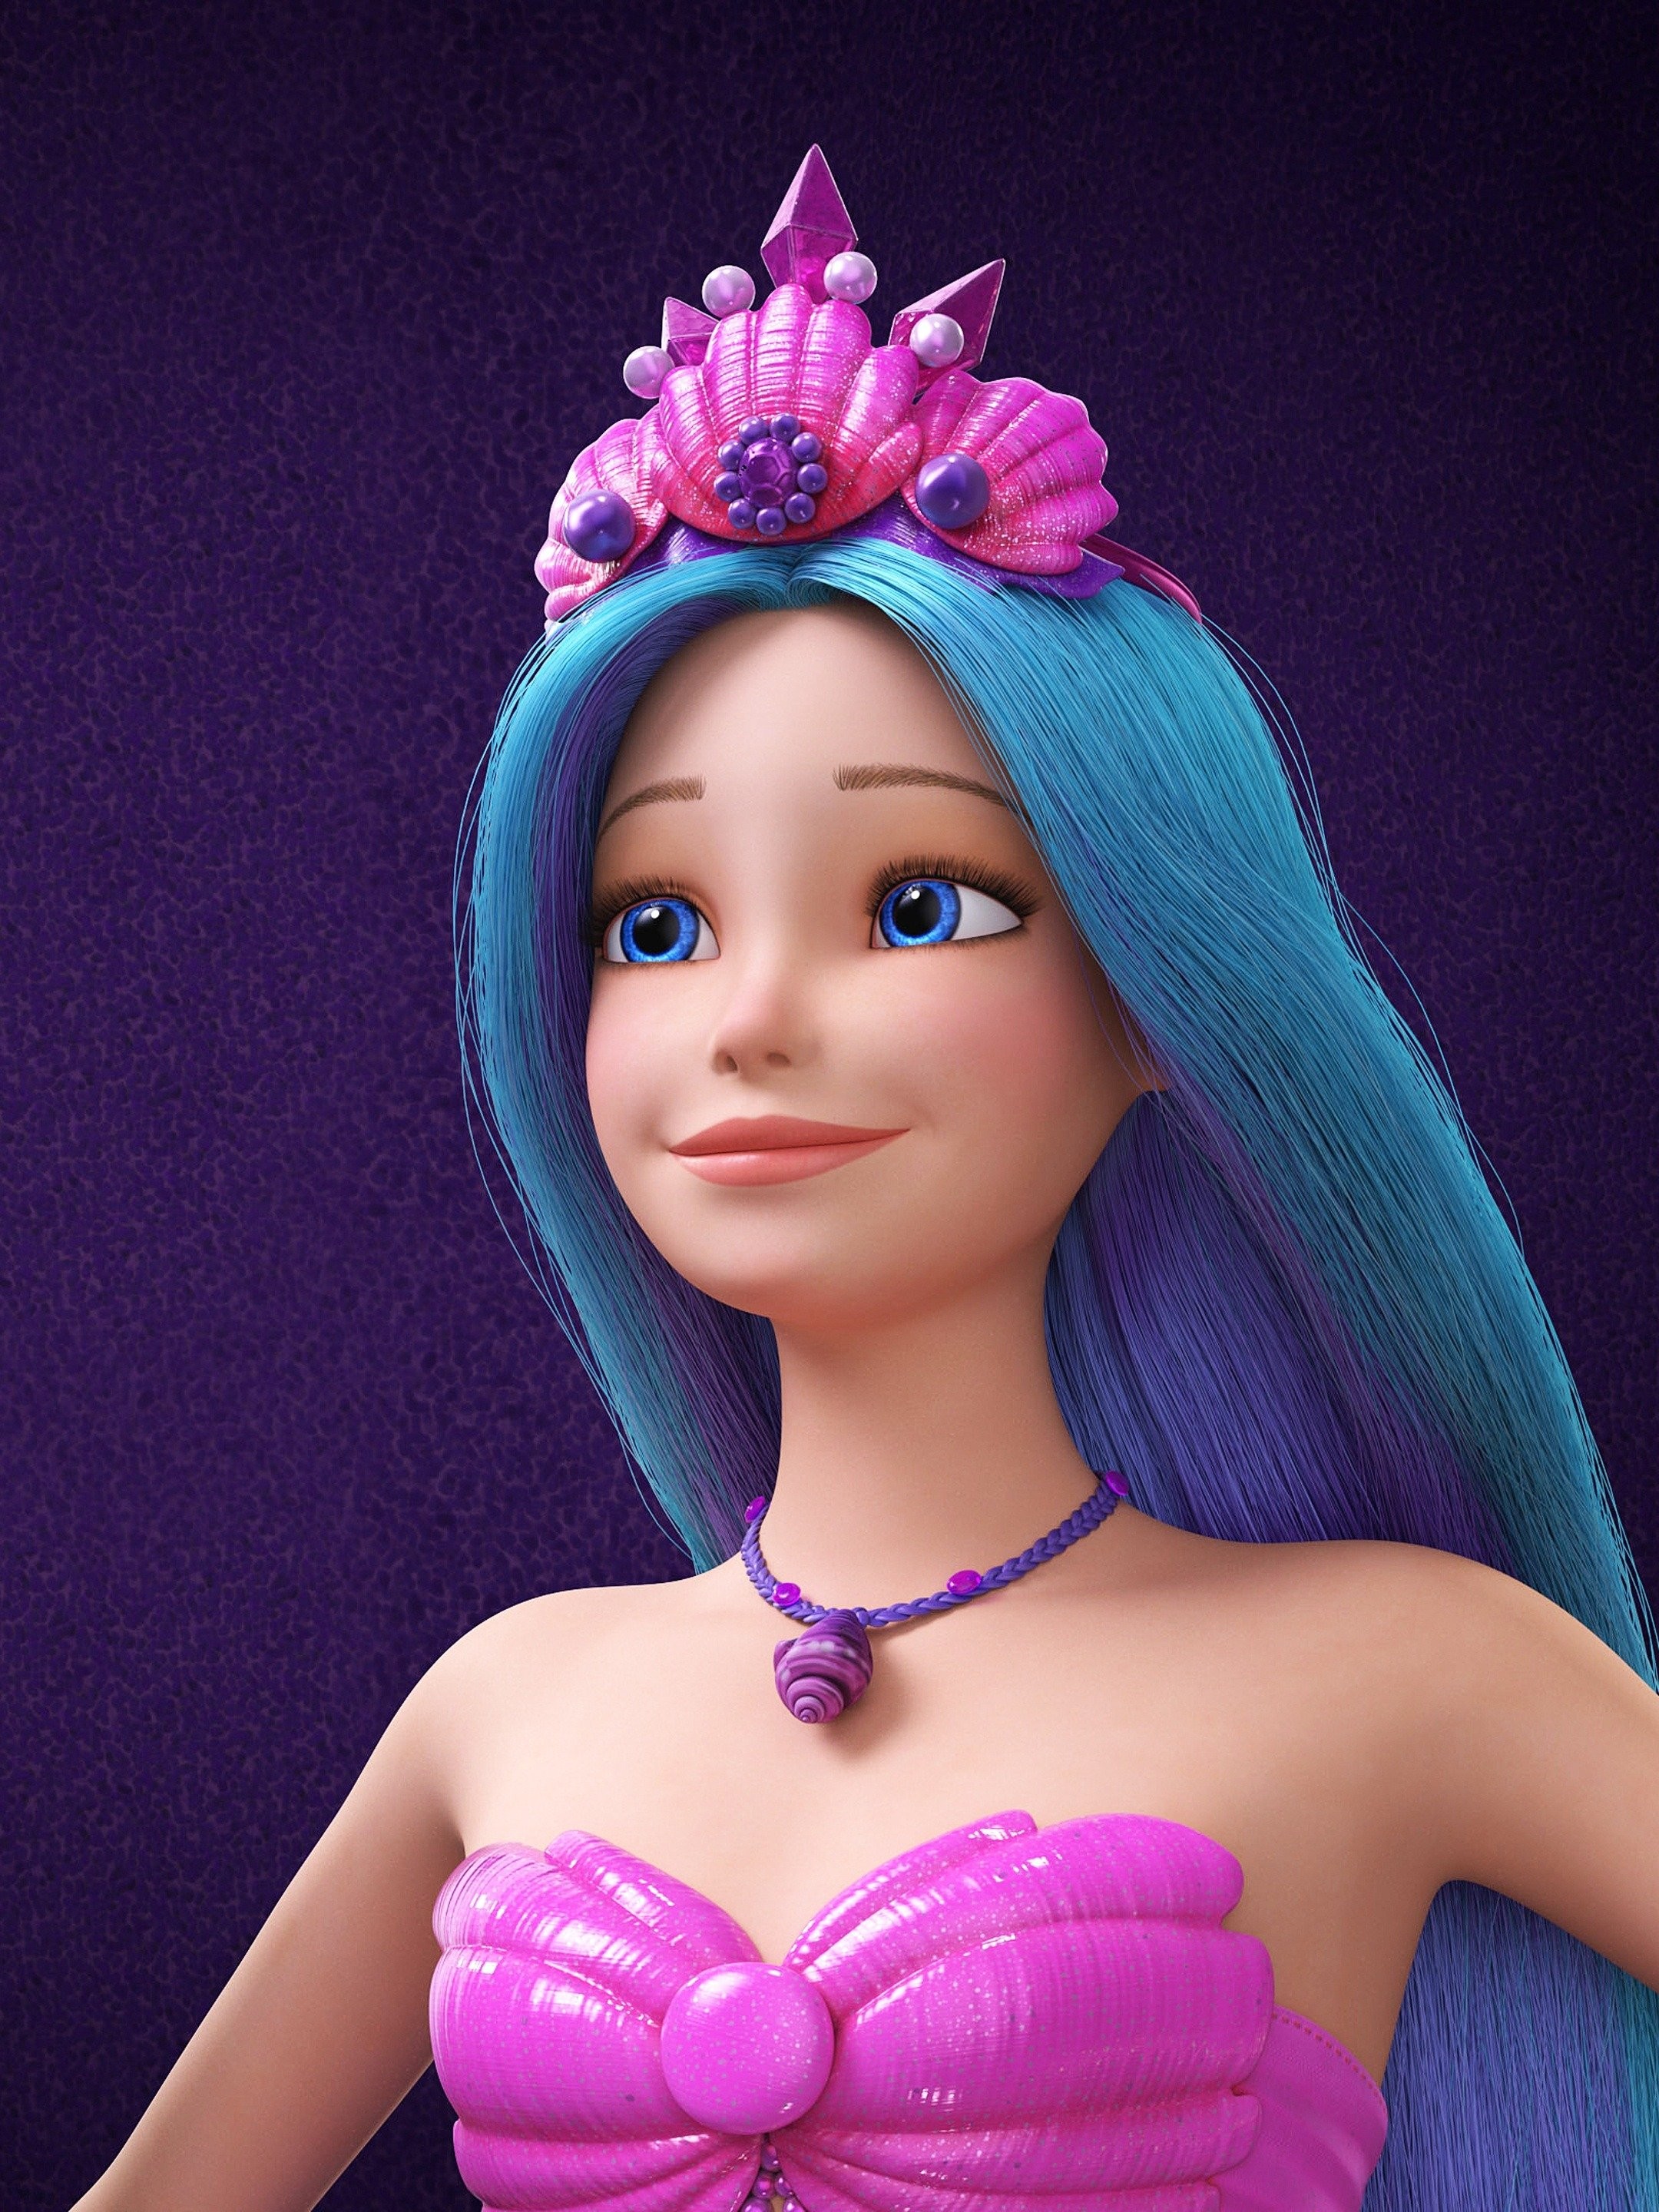 Barbie: Mermaid Power Movie Review